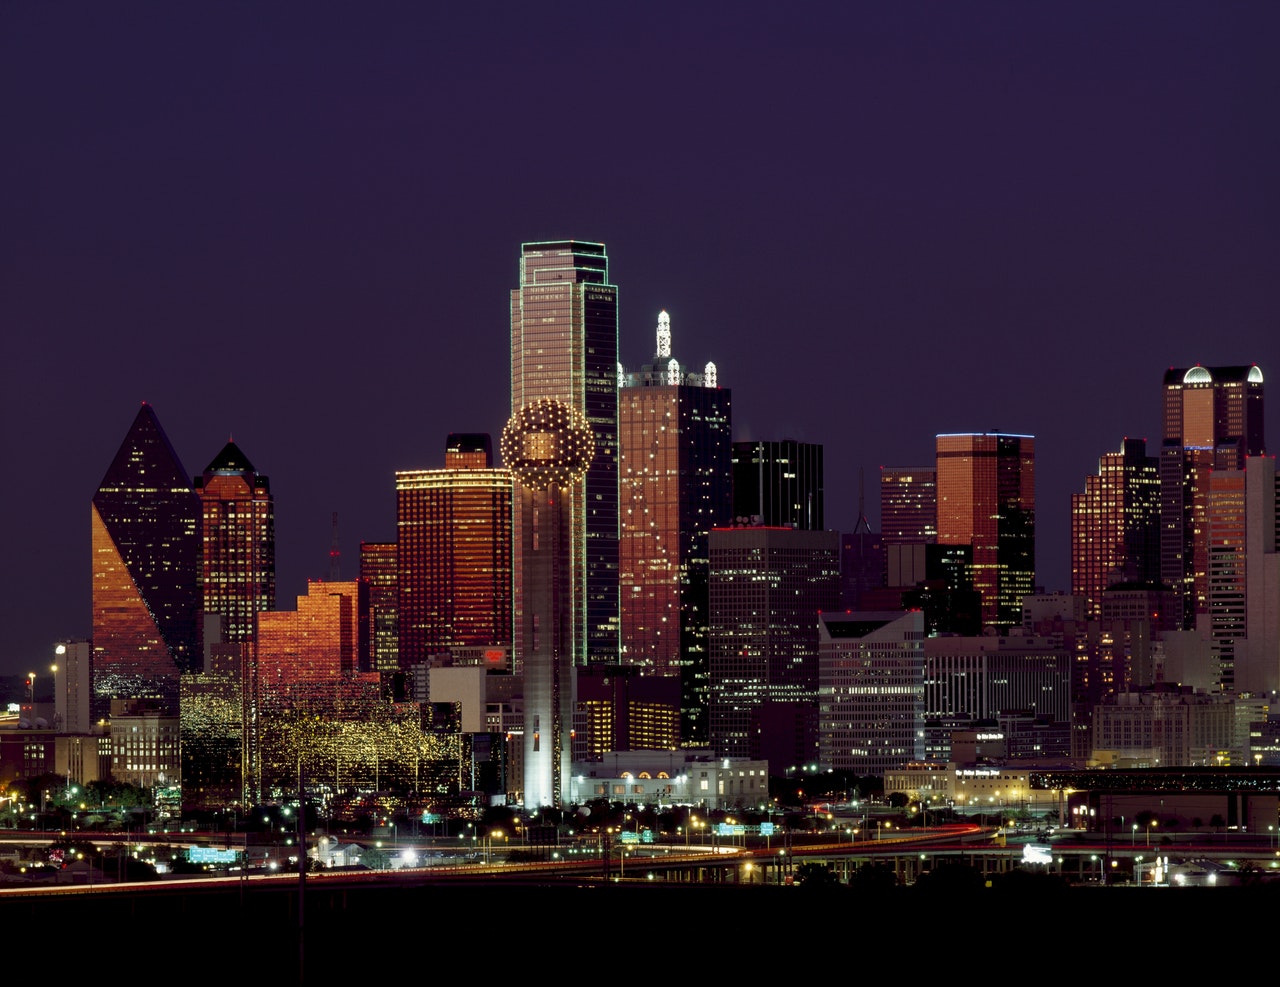 Dallas TX at night